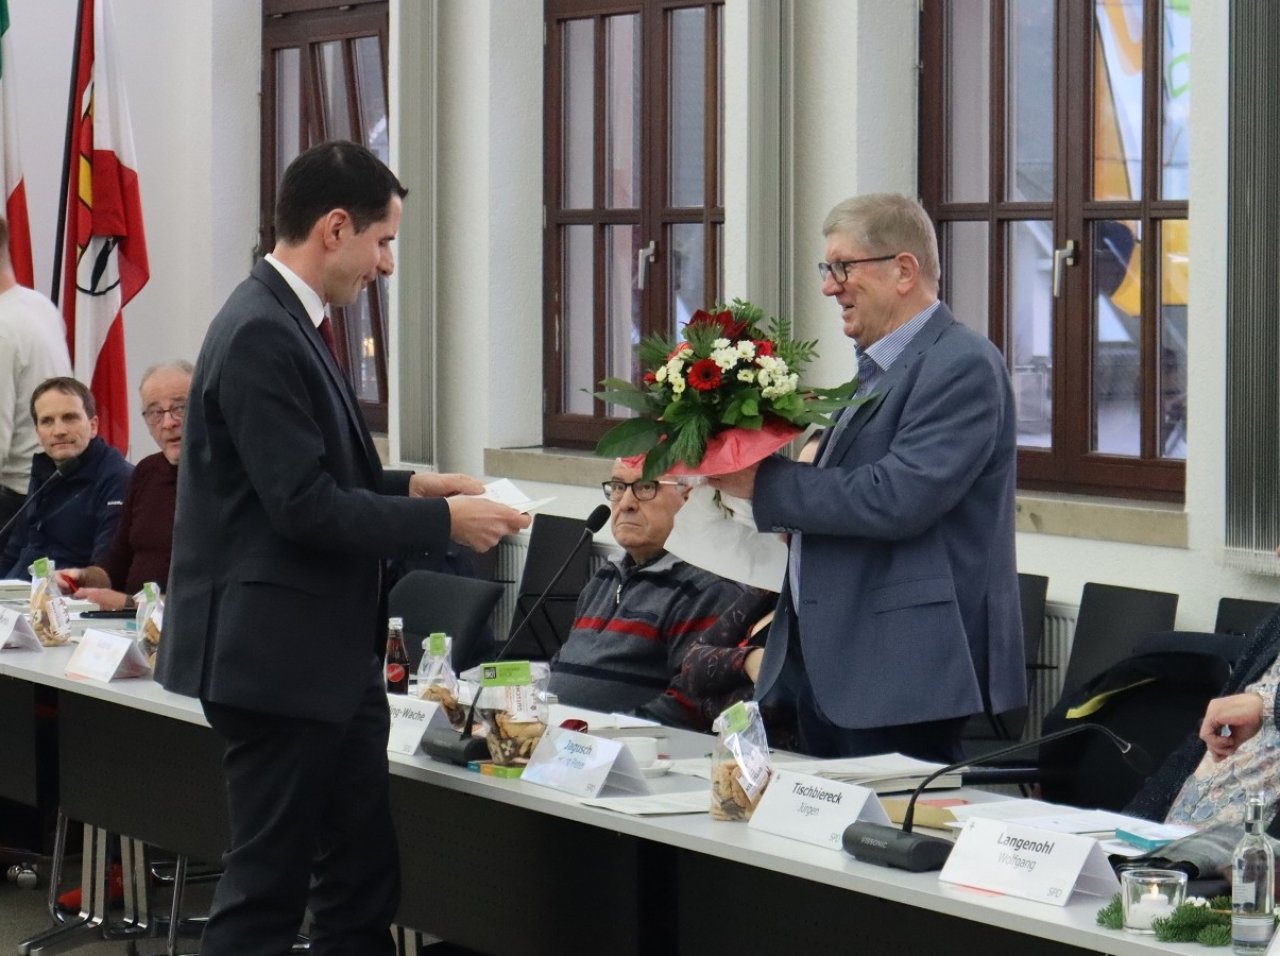 Bürgermeister Christian Pospischil (l.) dankte Horst Peter Jagusch für seinen Einsatz für die Stadt Attendorn und überreichte einen Blumenstrauß. von Marita Sapp